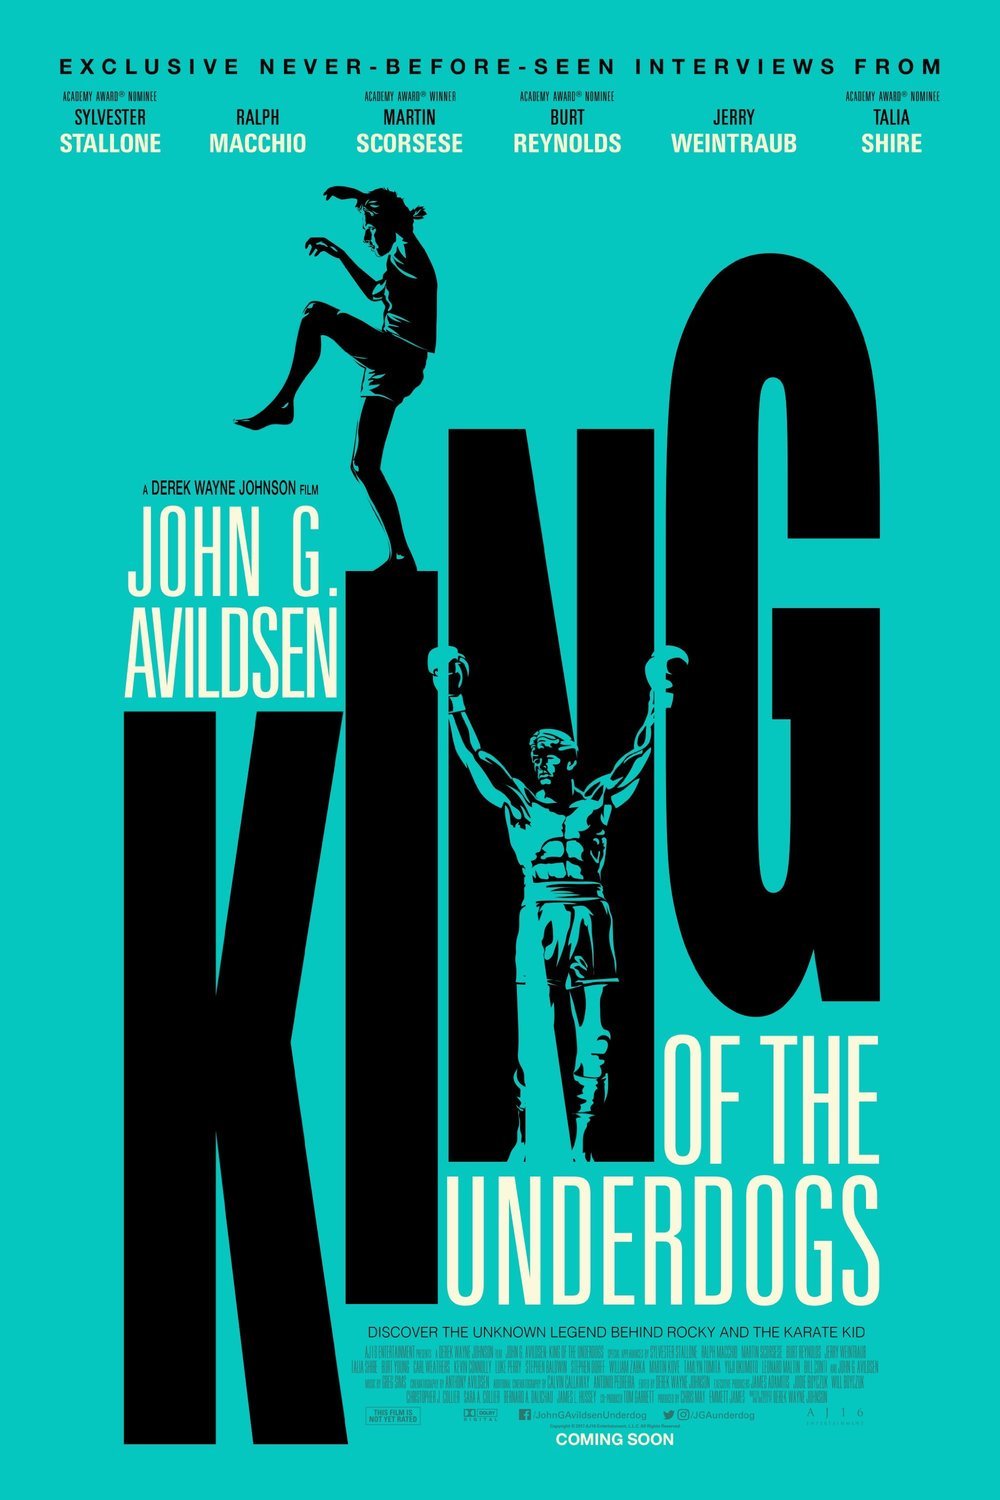 Poster of the movie John G. Avildsen: King of the Underdogs